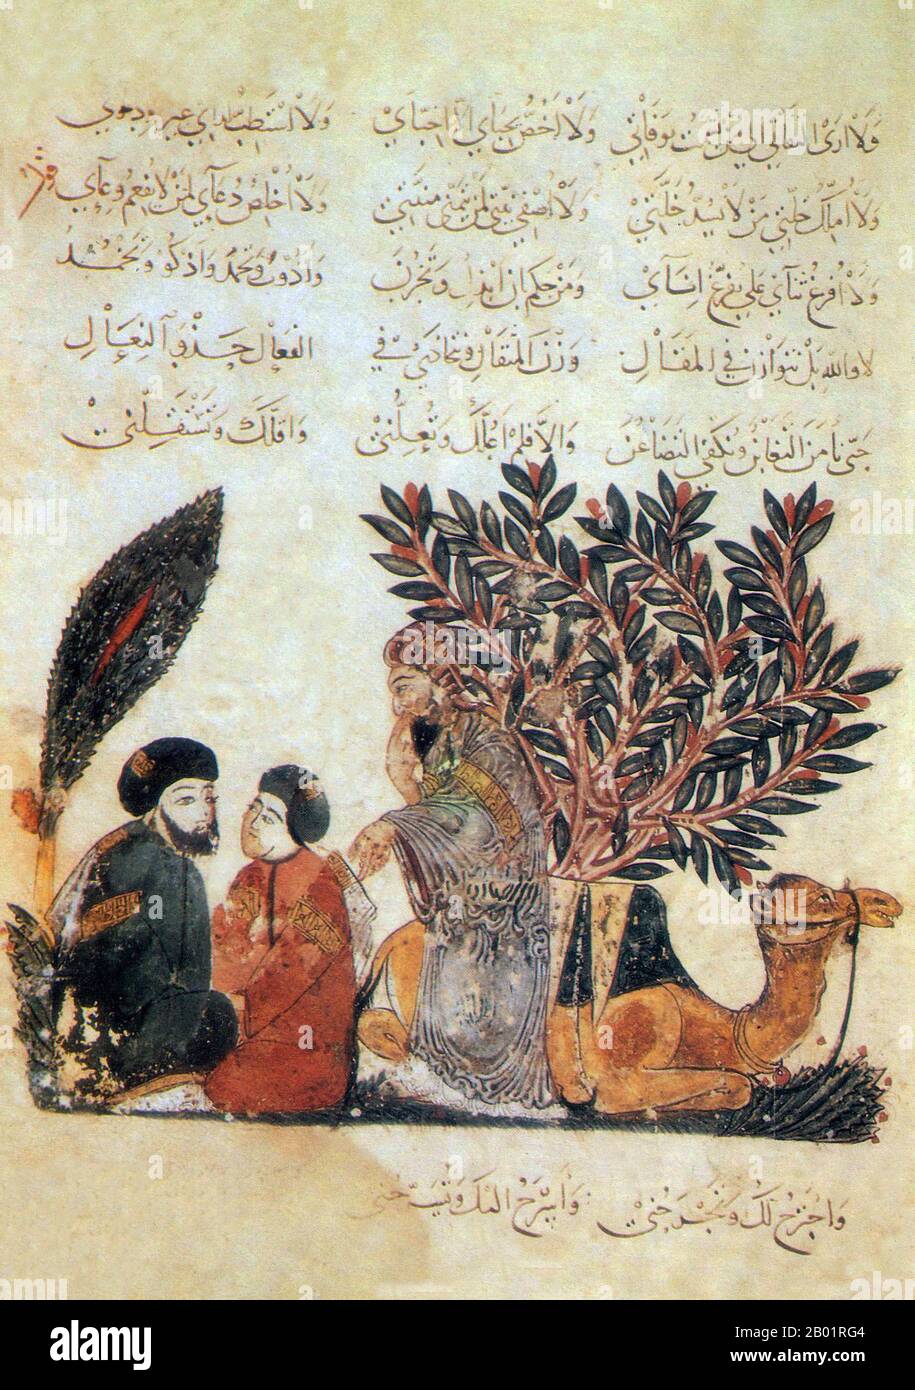 Iraq: Tre viaggiatori con un cammello. Pittura in miniatura di Yahya ibn Mahmud al-Wasiti, 1237 d.C. Yahyâ ibn Mahmûd al-Wâsitî è stato un artista arabo islamico del XIII secolo. Al-Wasiti è nato a Wasit, nel sud dell'Iraq. Era noto per le sue illustrazioni del Maqam di al-Hariri. I Maqāma (letteralmente "assemblee") sono un genere letterario arabo (originariamente) di prosa rimata con intervalli di poesia in cui la stravaganza retorica è evidente. Si dice che l'autore del X secolo Badī' al-Zaman al-Hamadhāni abbia inventato la forma, che fu estesa da al-Hariri di Bassora nel secolo successivo. Foto Stock